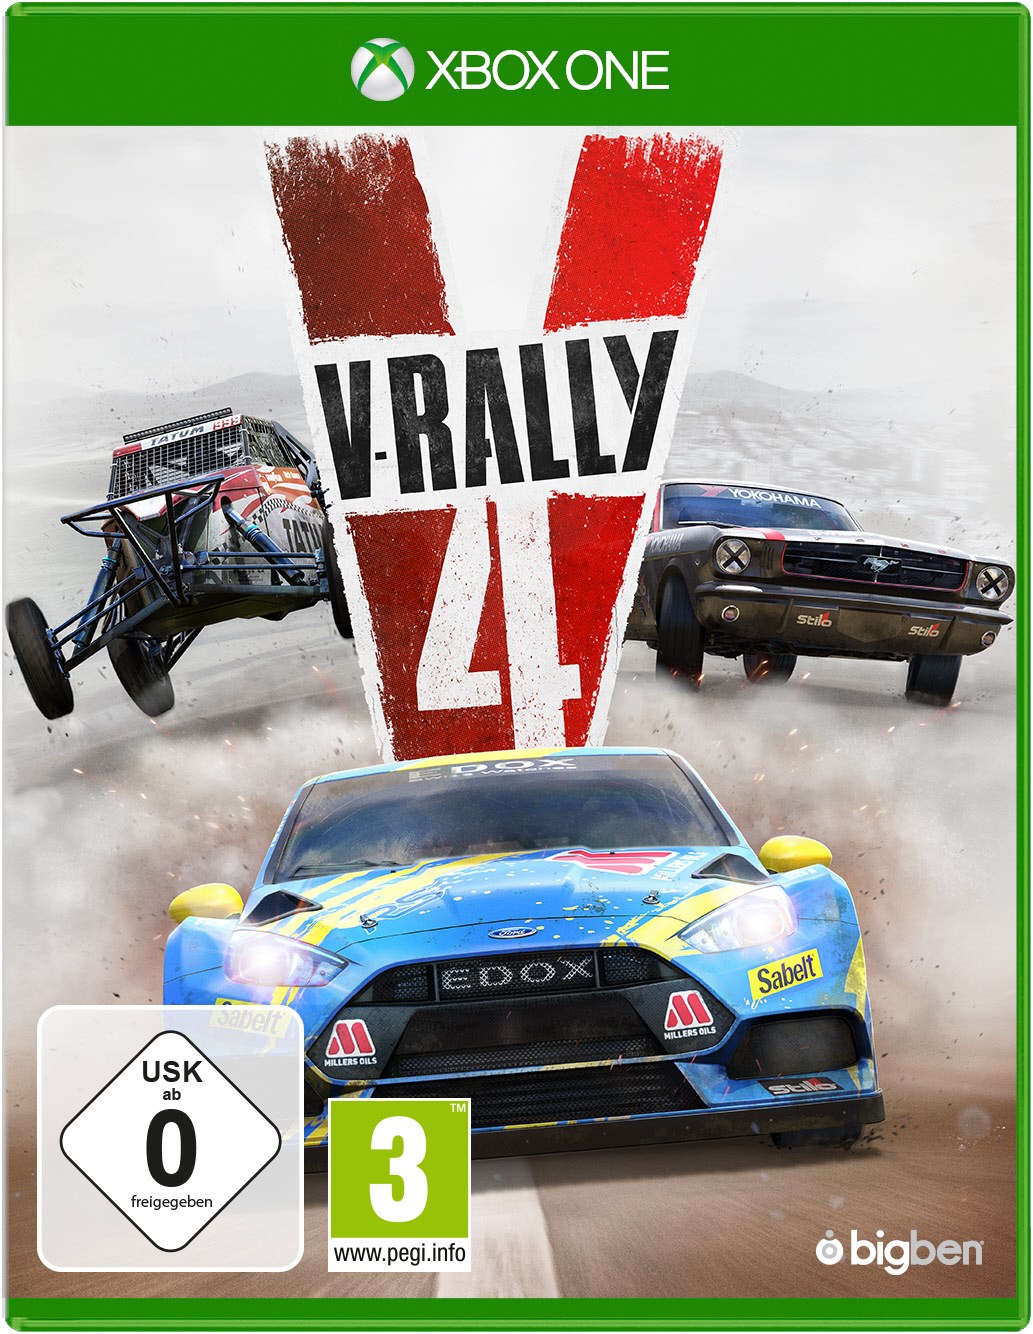 Xbox One V-Rally 4